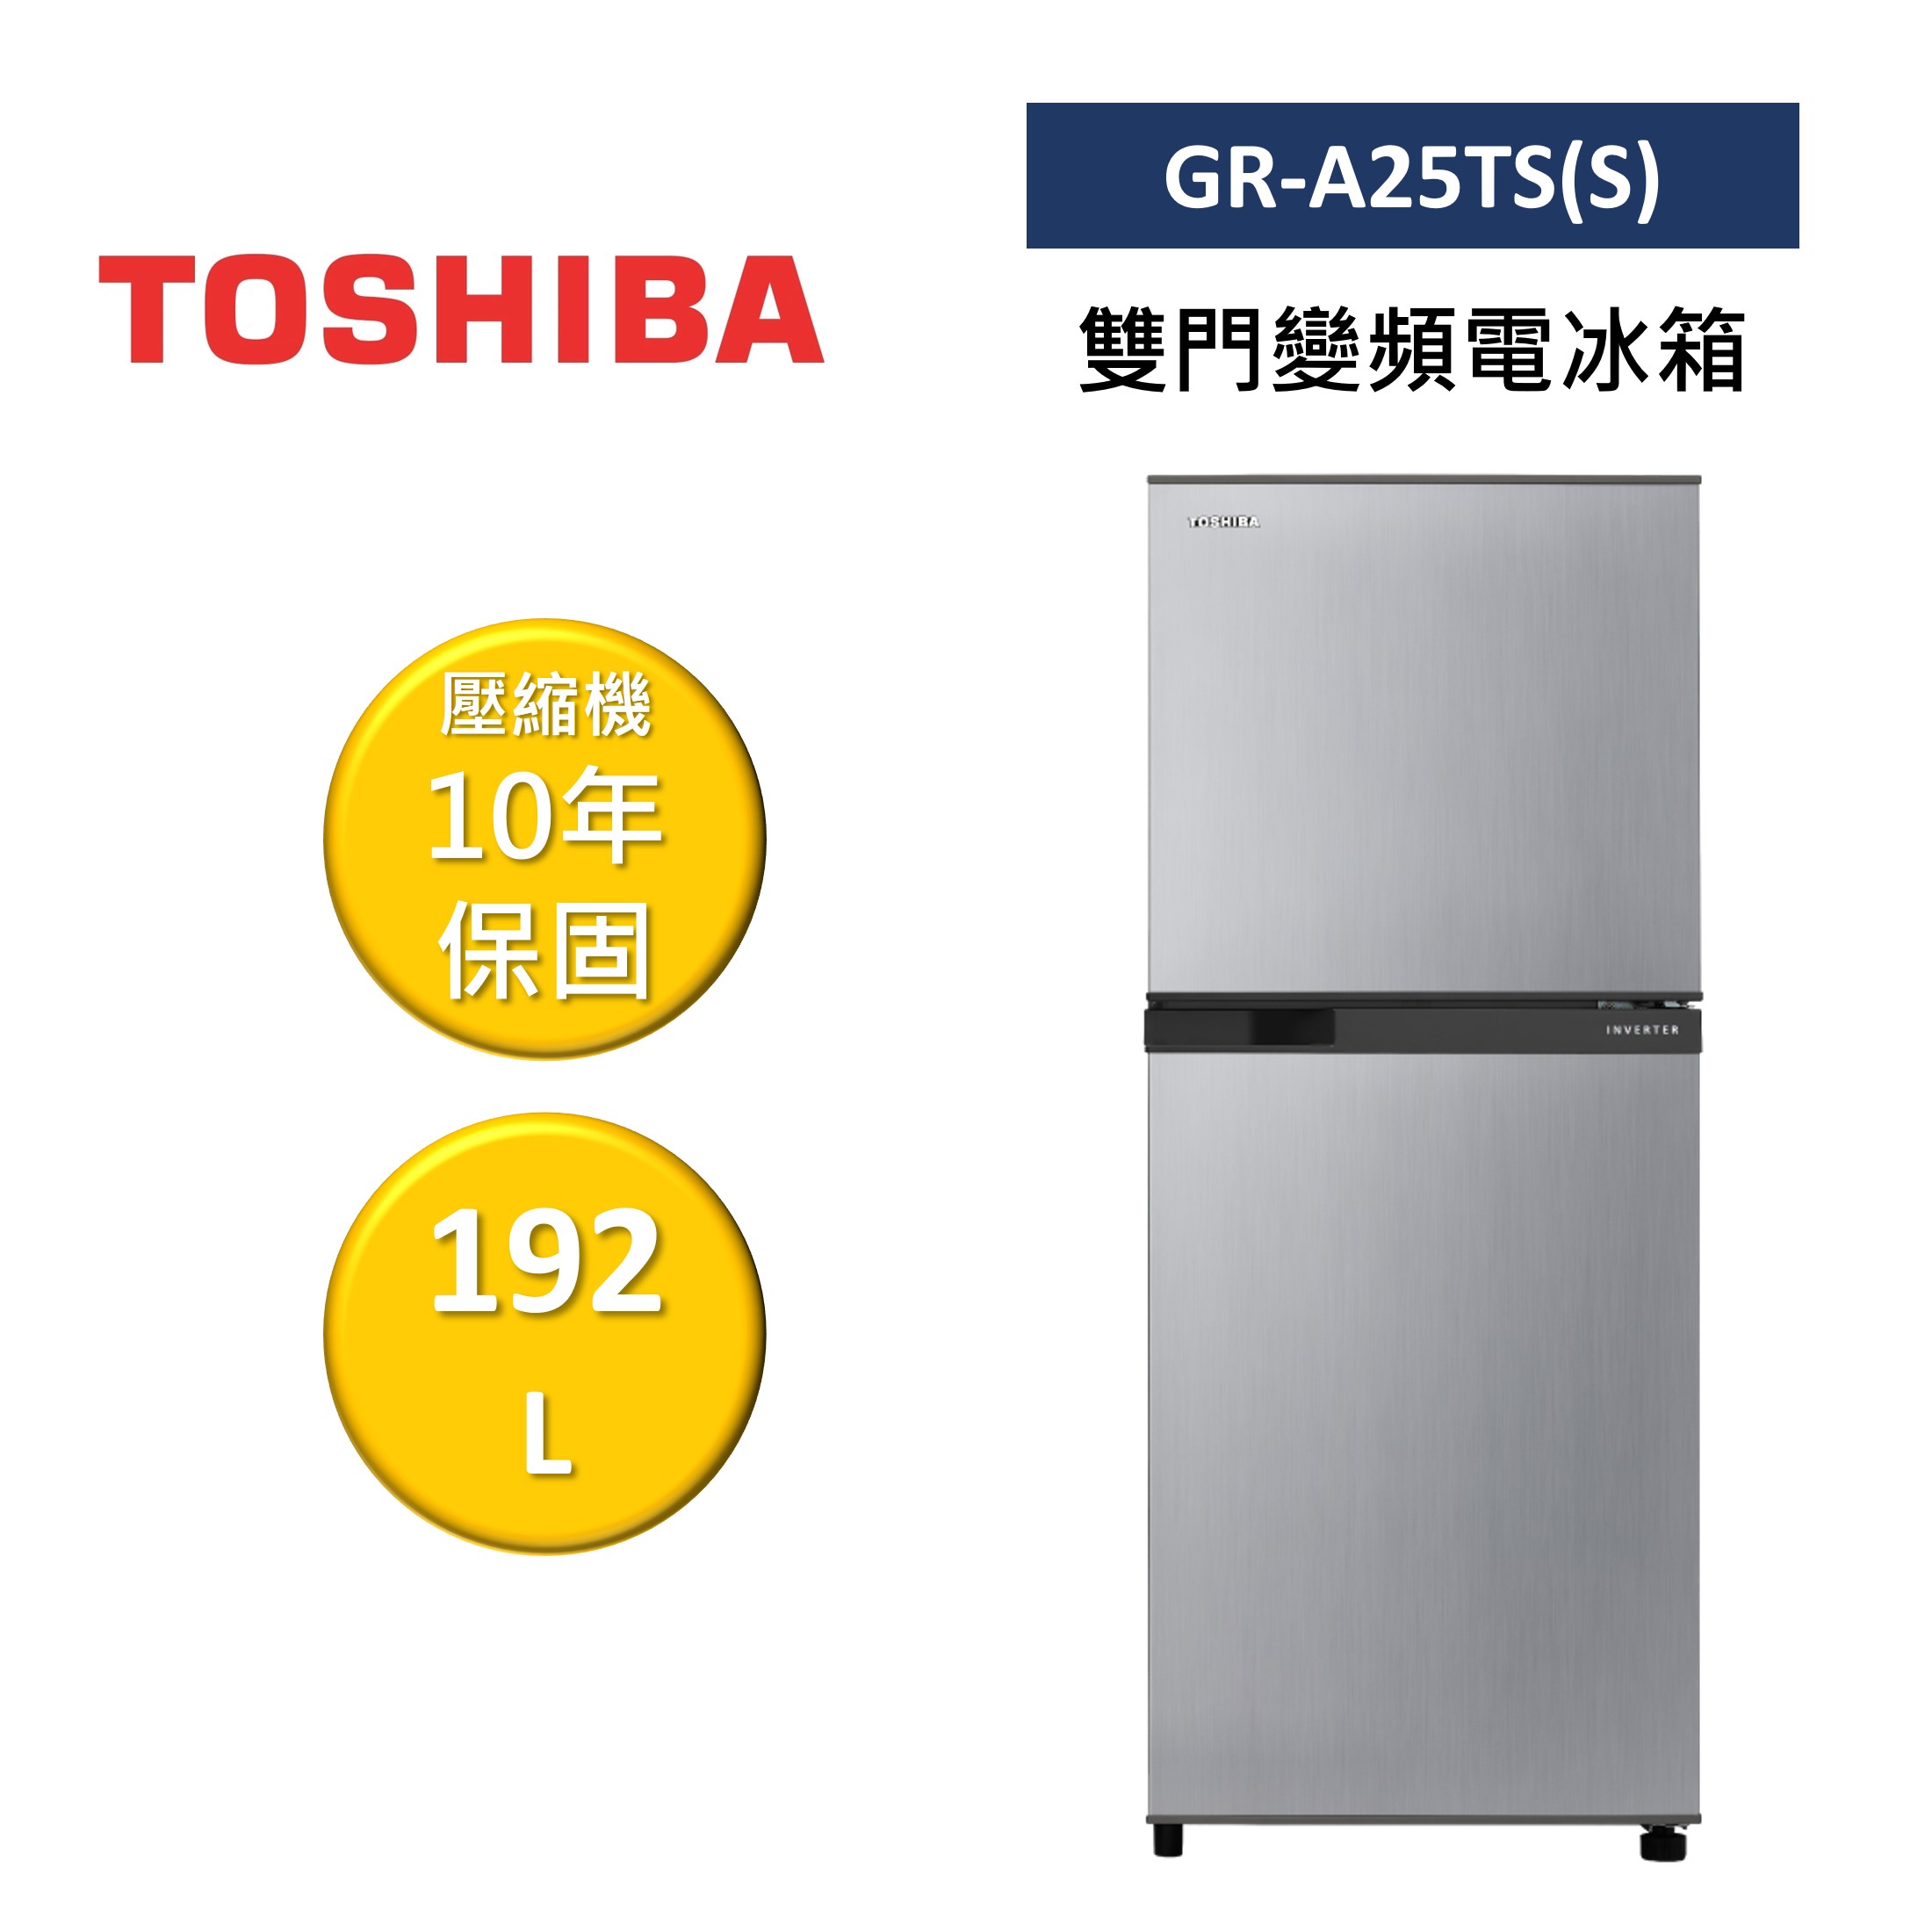 TOSHIBA 東芝 GR-A25TS(S) 192L 雙門變頻電冰箱 公司貨